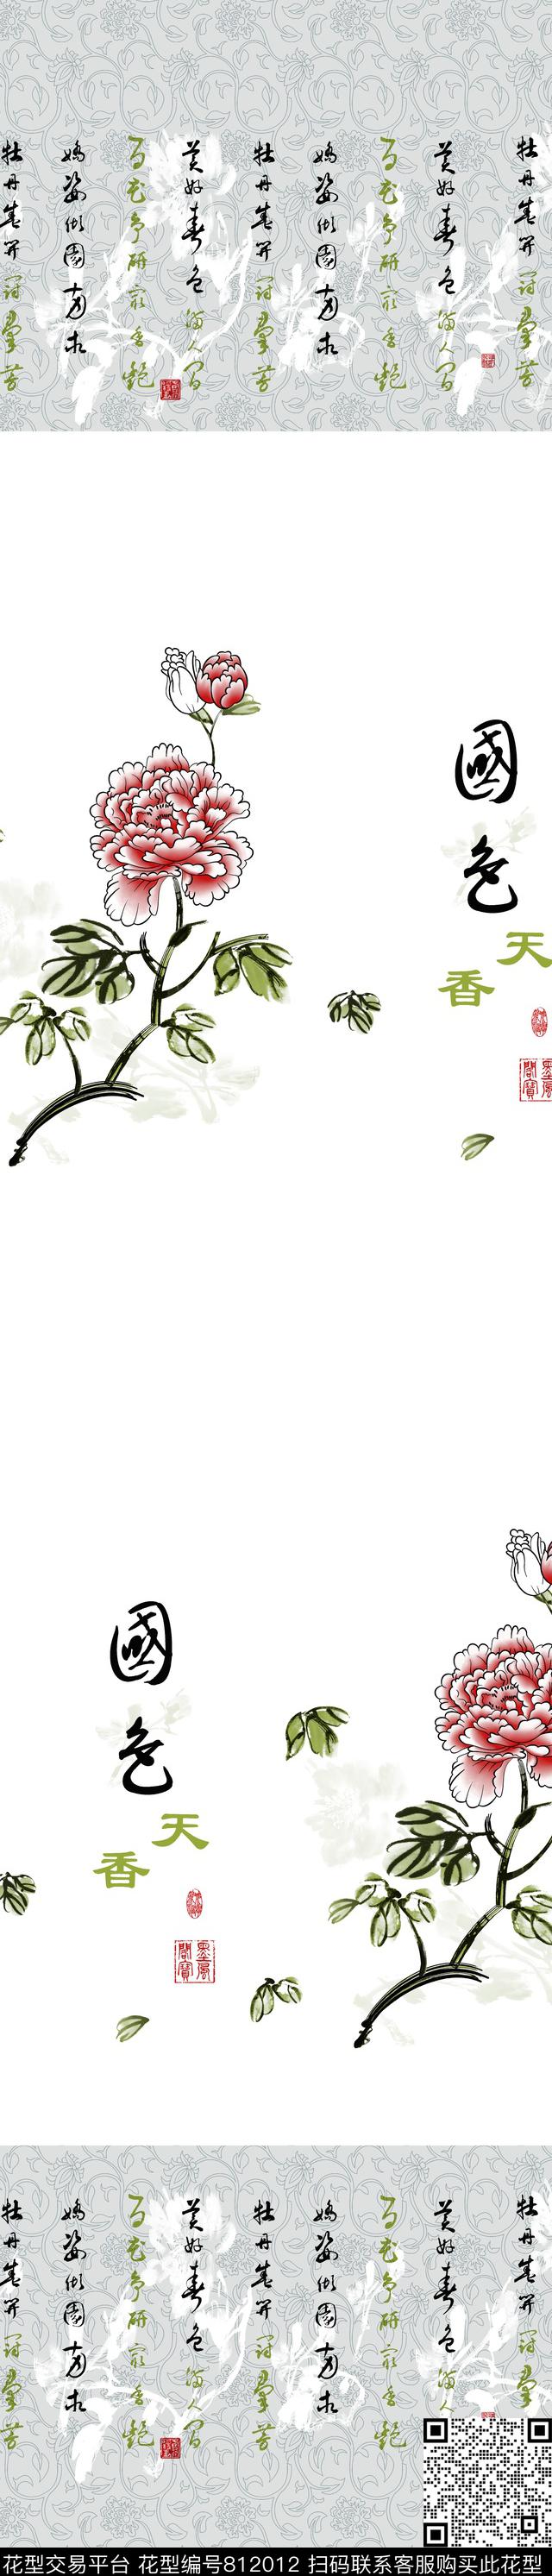 YJH160417a.jpg - 812012 - 牡丹 窗帘 中国风 - 传统印花花型 － 窗帘花型设计 － 瓦栏